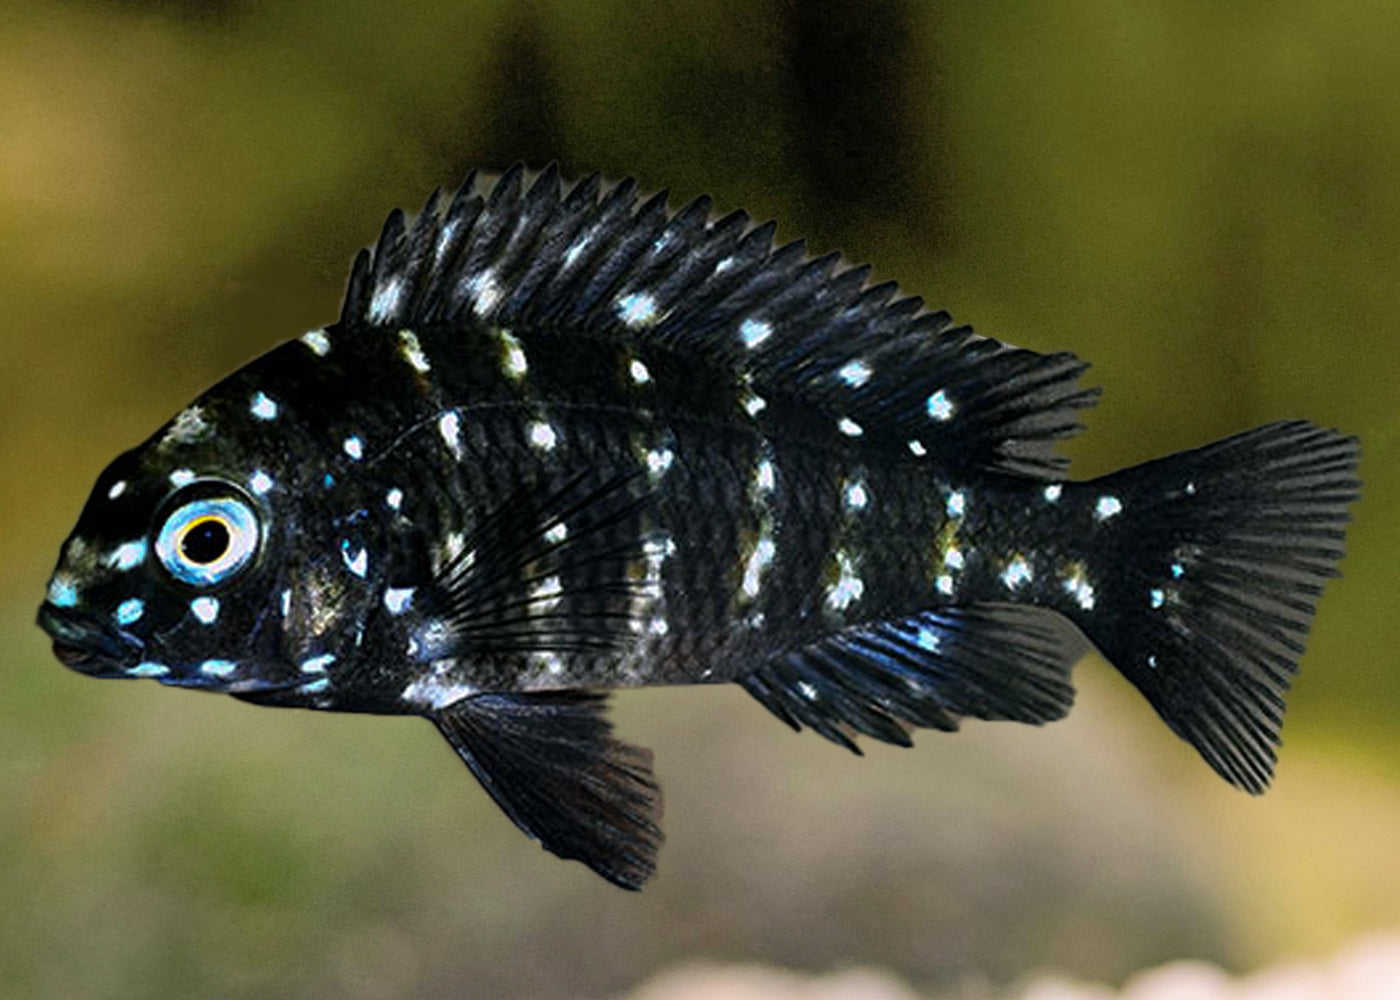 white spotted cichlid | tropheus duboisi | Live fish online | coburgauqarium.com.au｜Aquarium FIsh for sale | Tropicah fish store | African Cichlid | Freshwater Fish | Coburg Aquarium